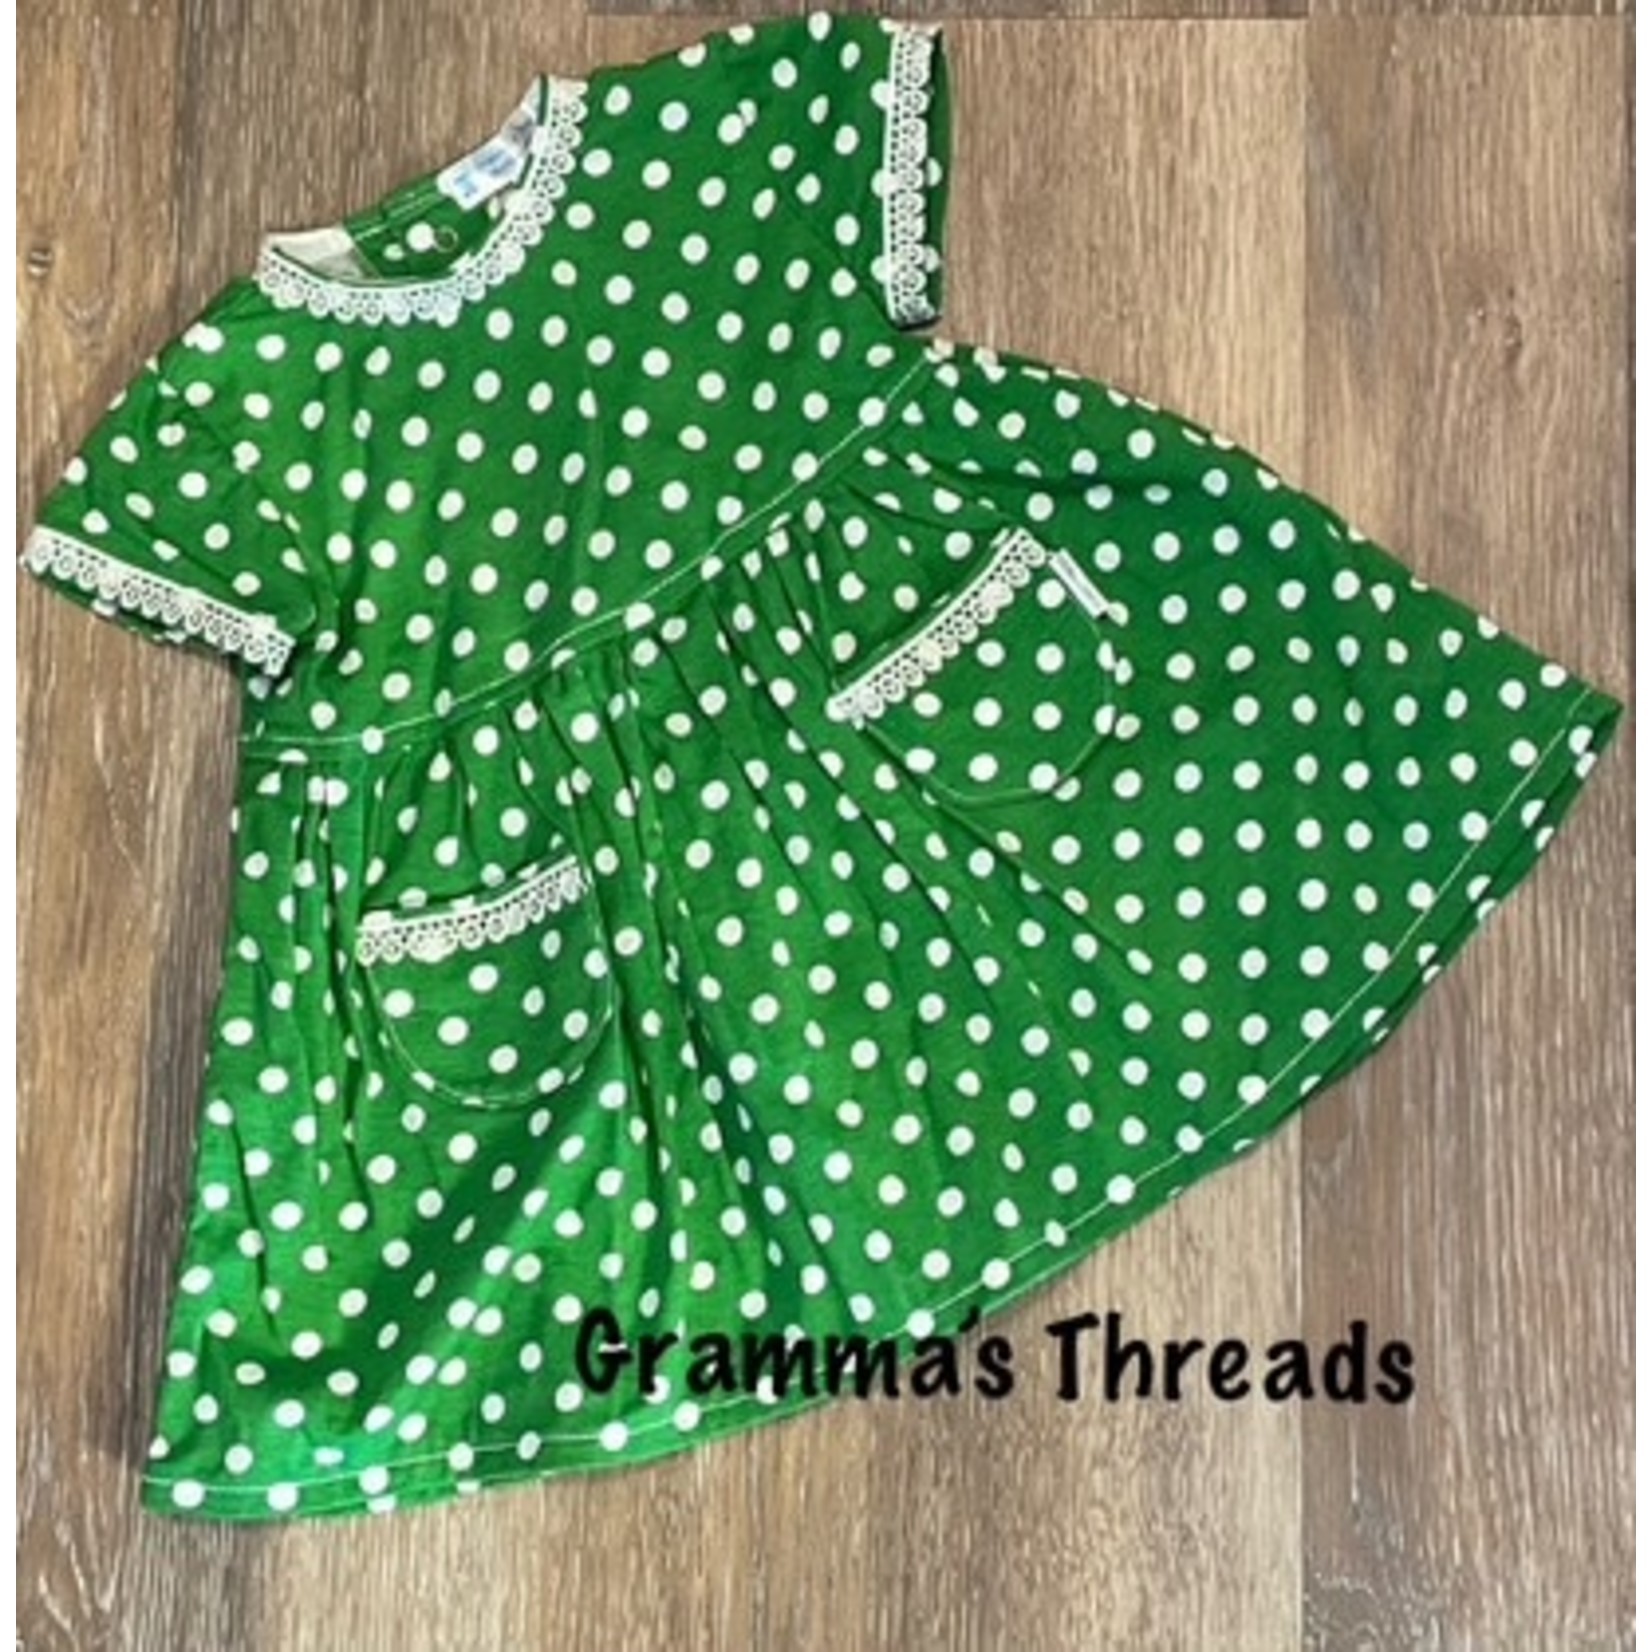 Gramma's Threads Short Sleeve Dress